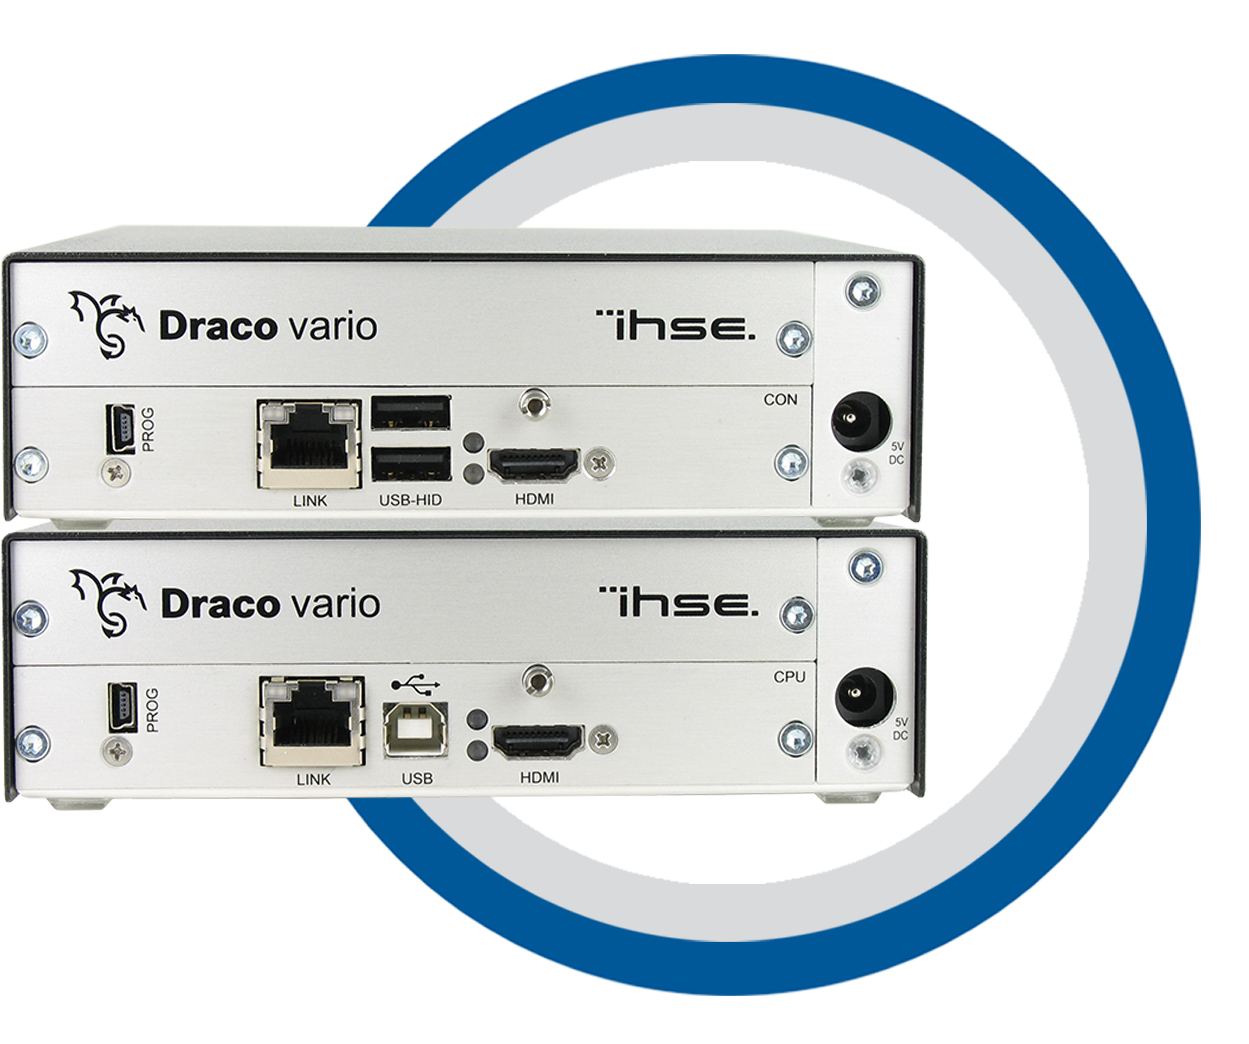 Ihse Draco Vario 481 Series Extenders (1621x1128), Png Download